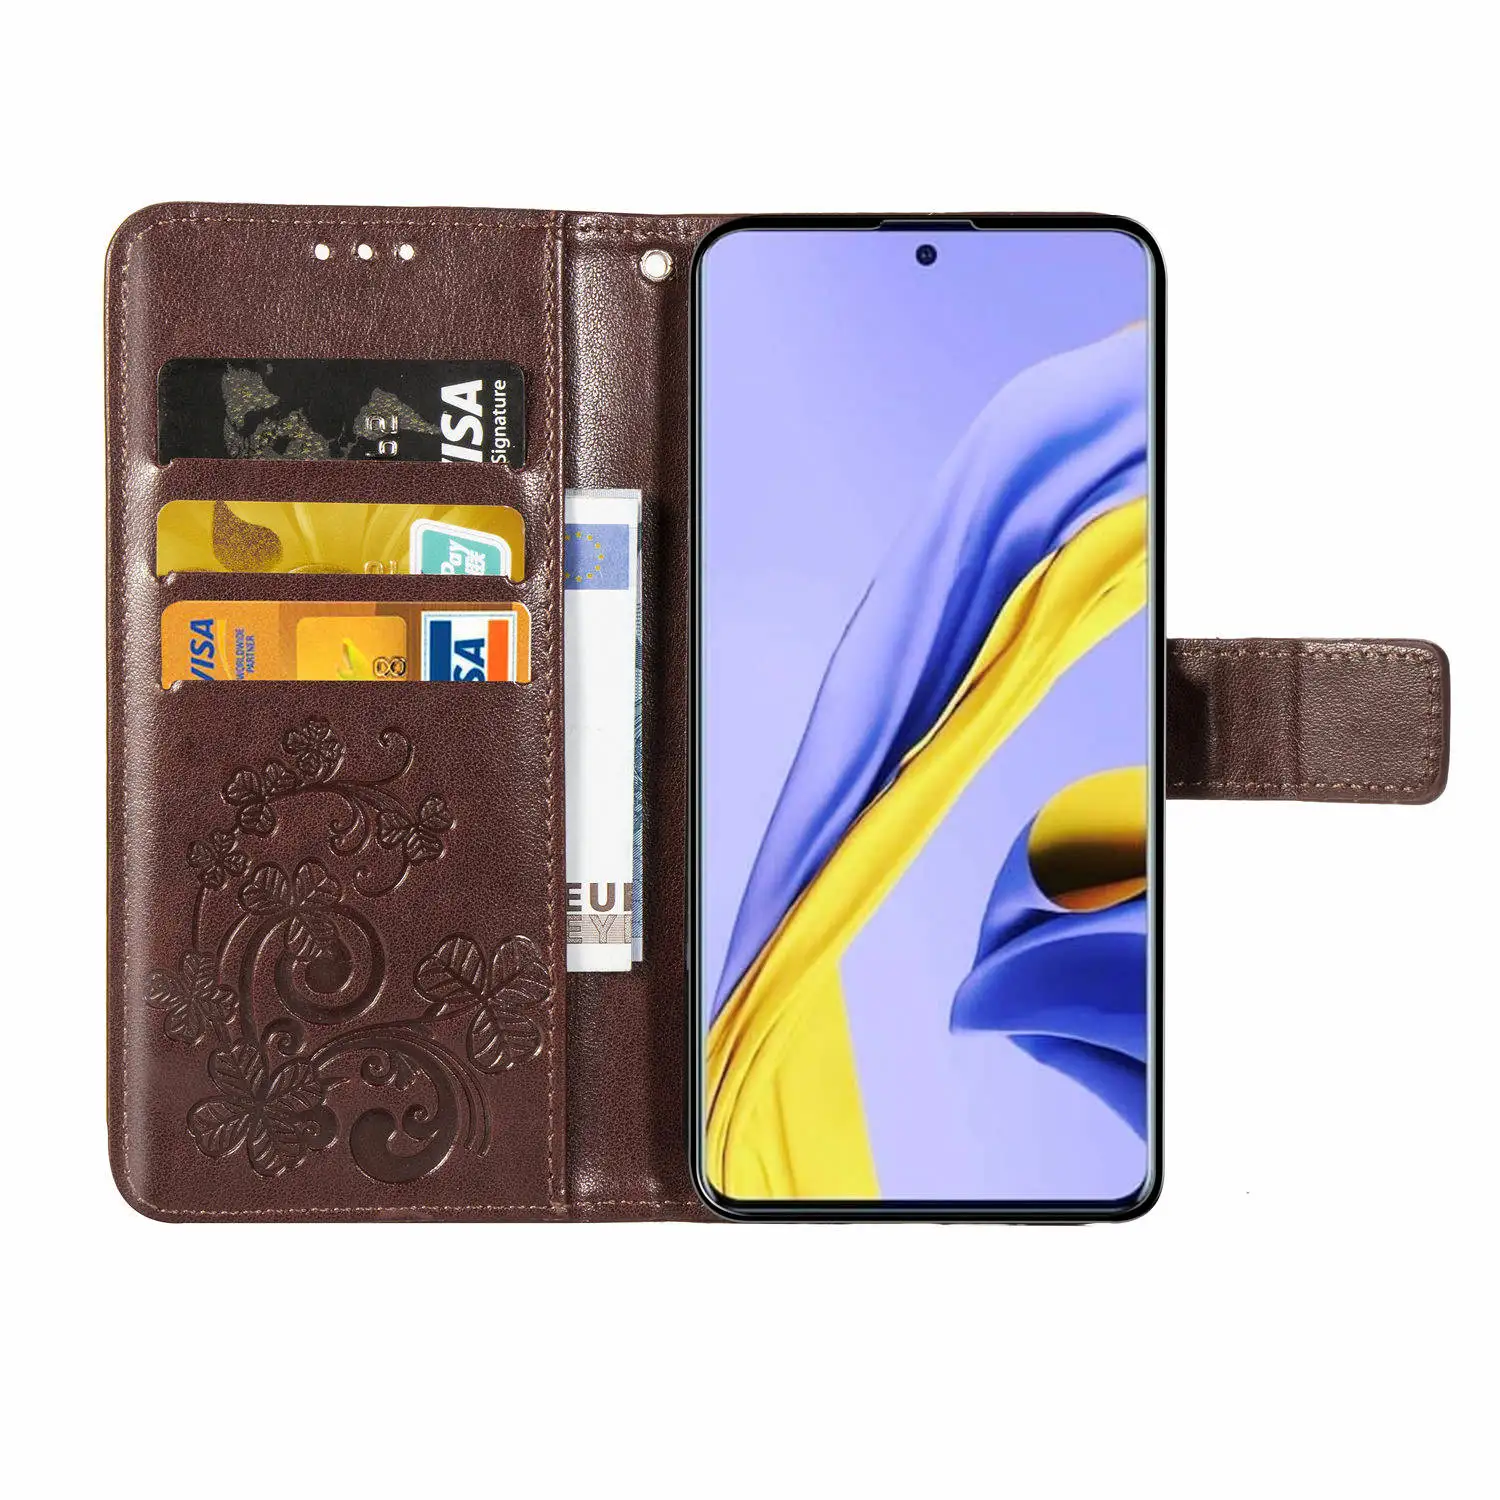 Para Samsung Galaxy A51 caso a51 Flip Couro PU + TPU Carteira do Titular do Cartão de capa de Silicone Para o Galaxy a51 Telefone Sacos Tampa da Ranhura do Cartão